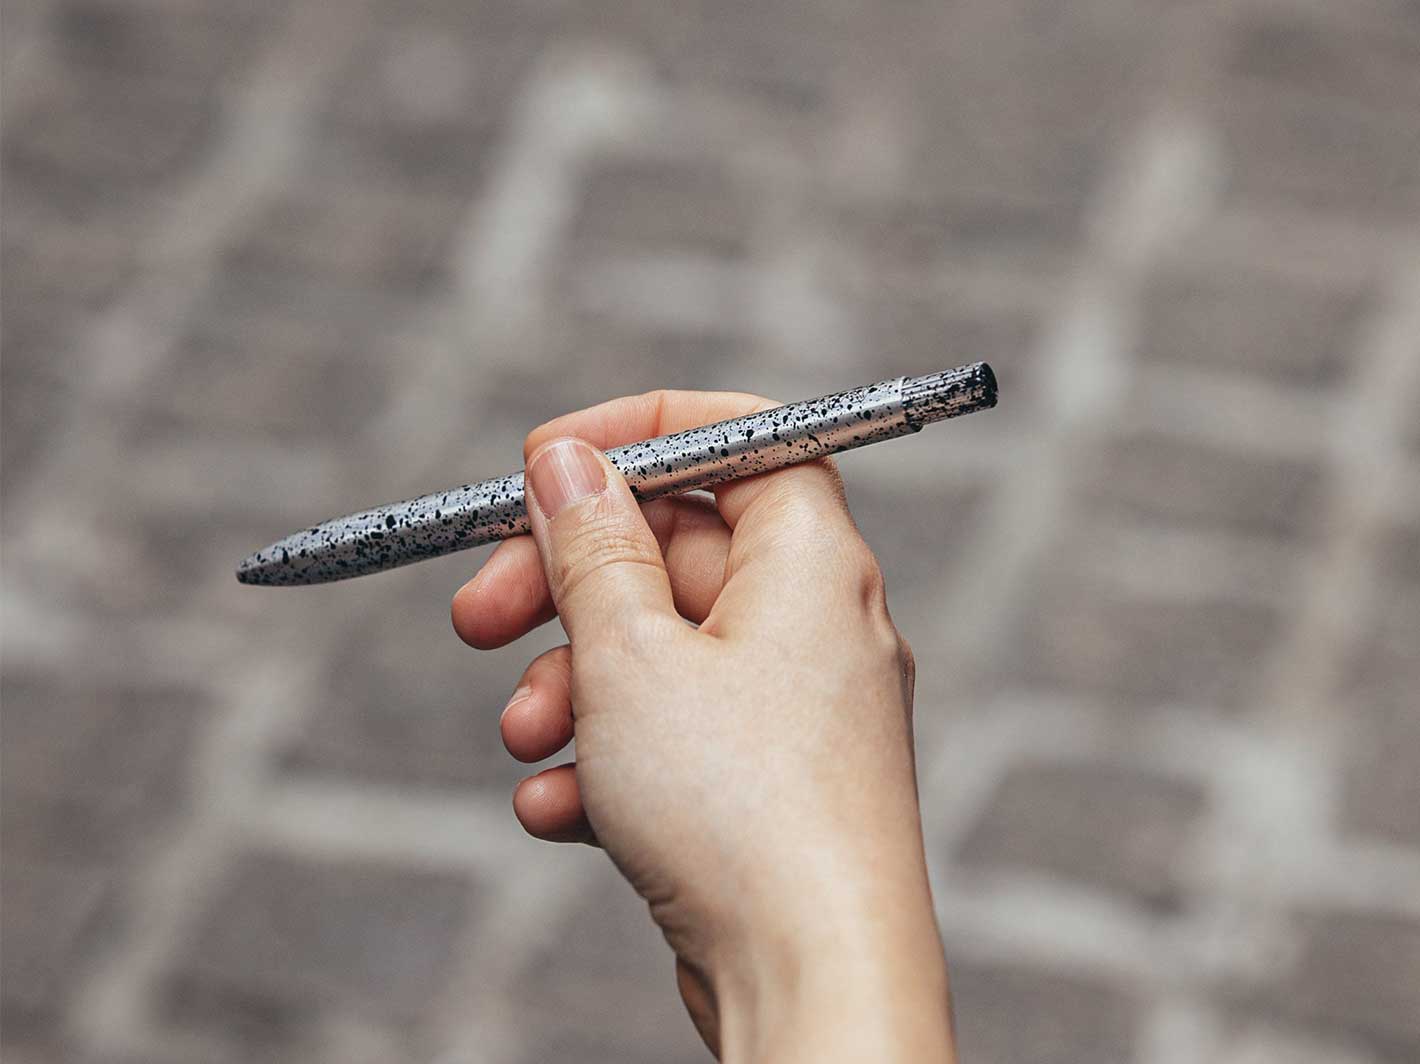 Tempel Stainless Steel Pen